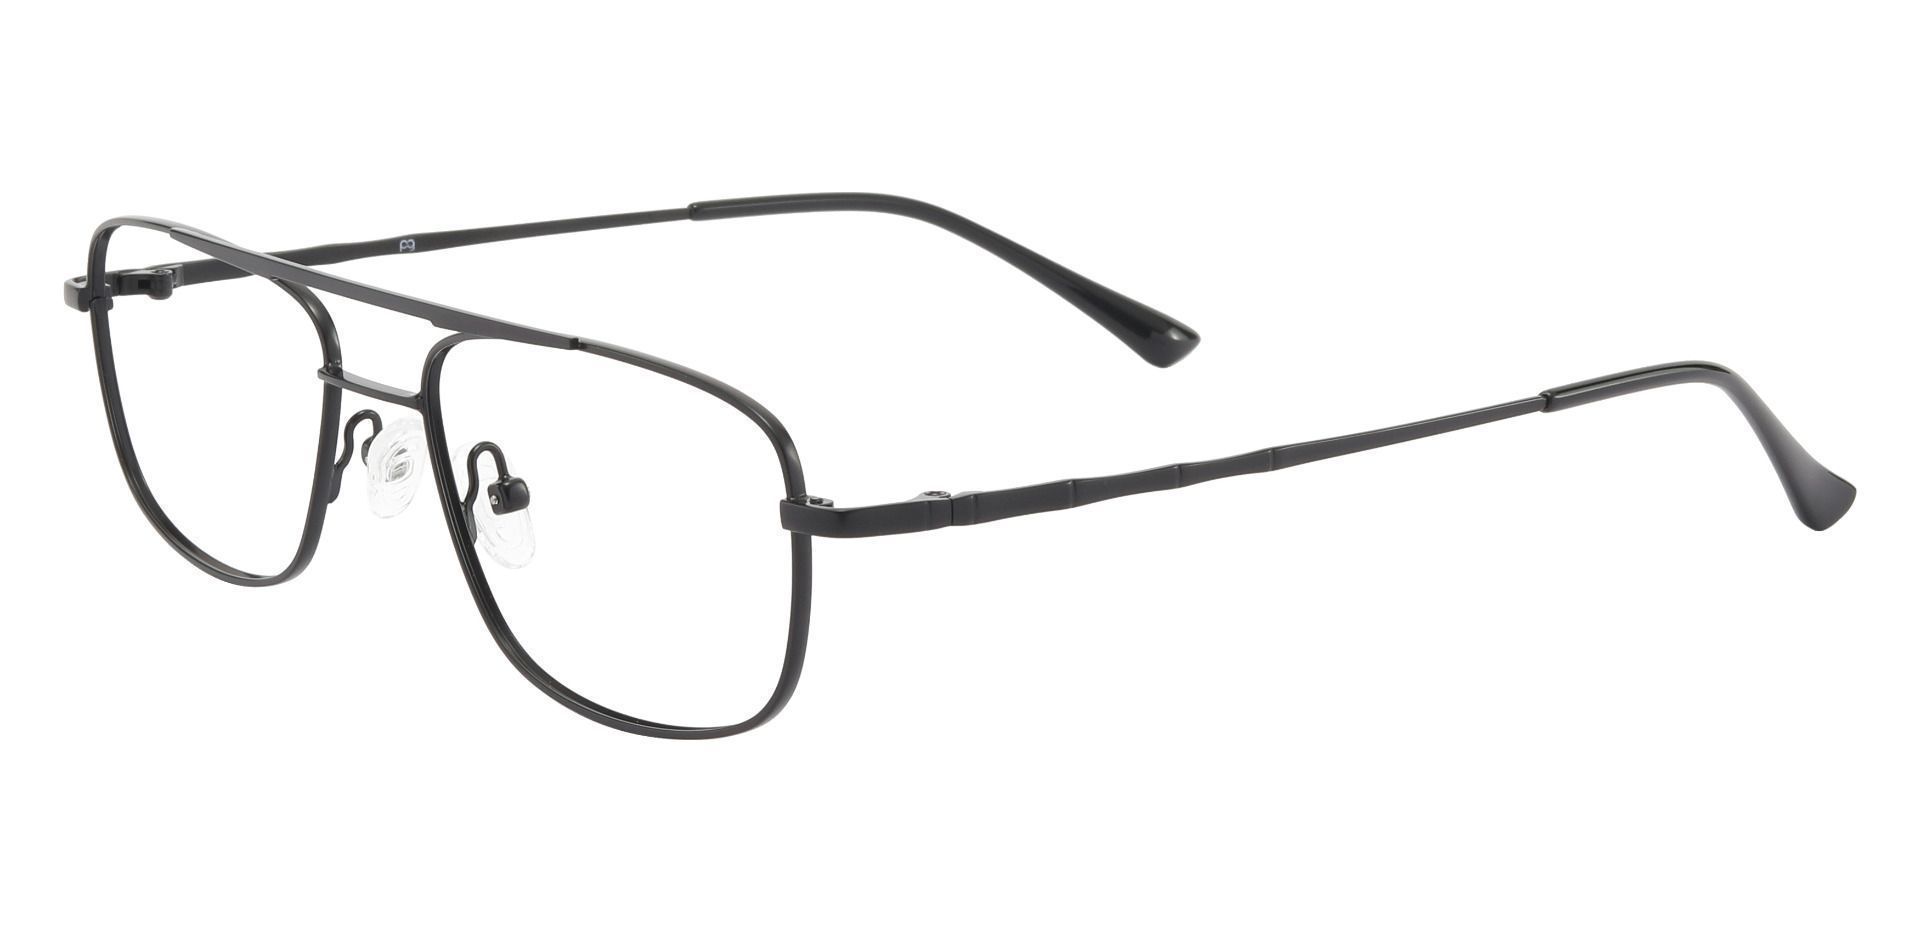 Hugo Aviator Eyeglasses Frame - Black